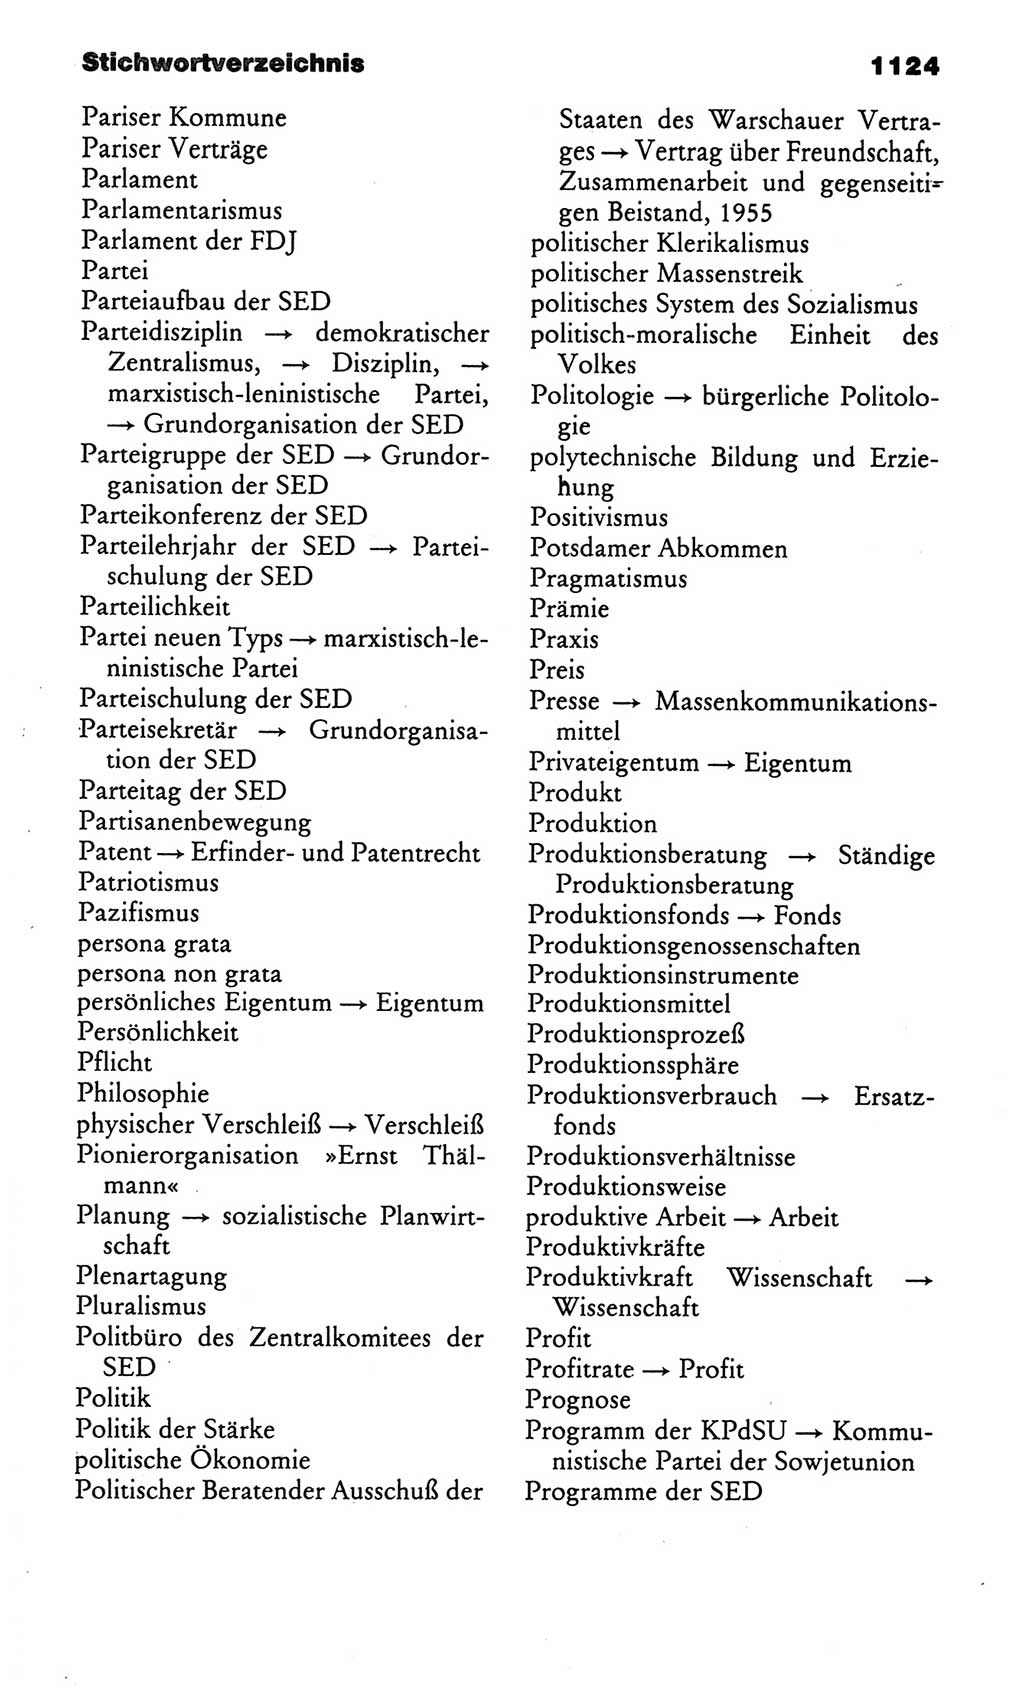 Kleines politisches Wörterbuch [Deutsche Demokratische Republik (DDR)] 1986, Seite 1124 (Kl. pol. Wb. DDR 1986, S. 1124)